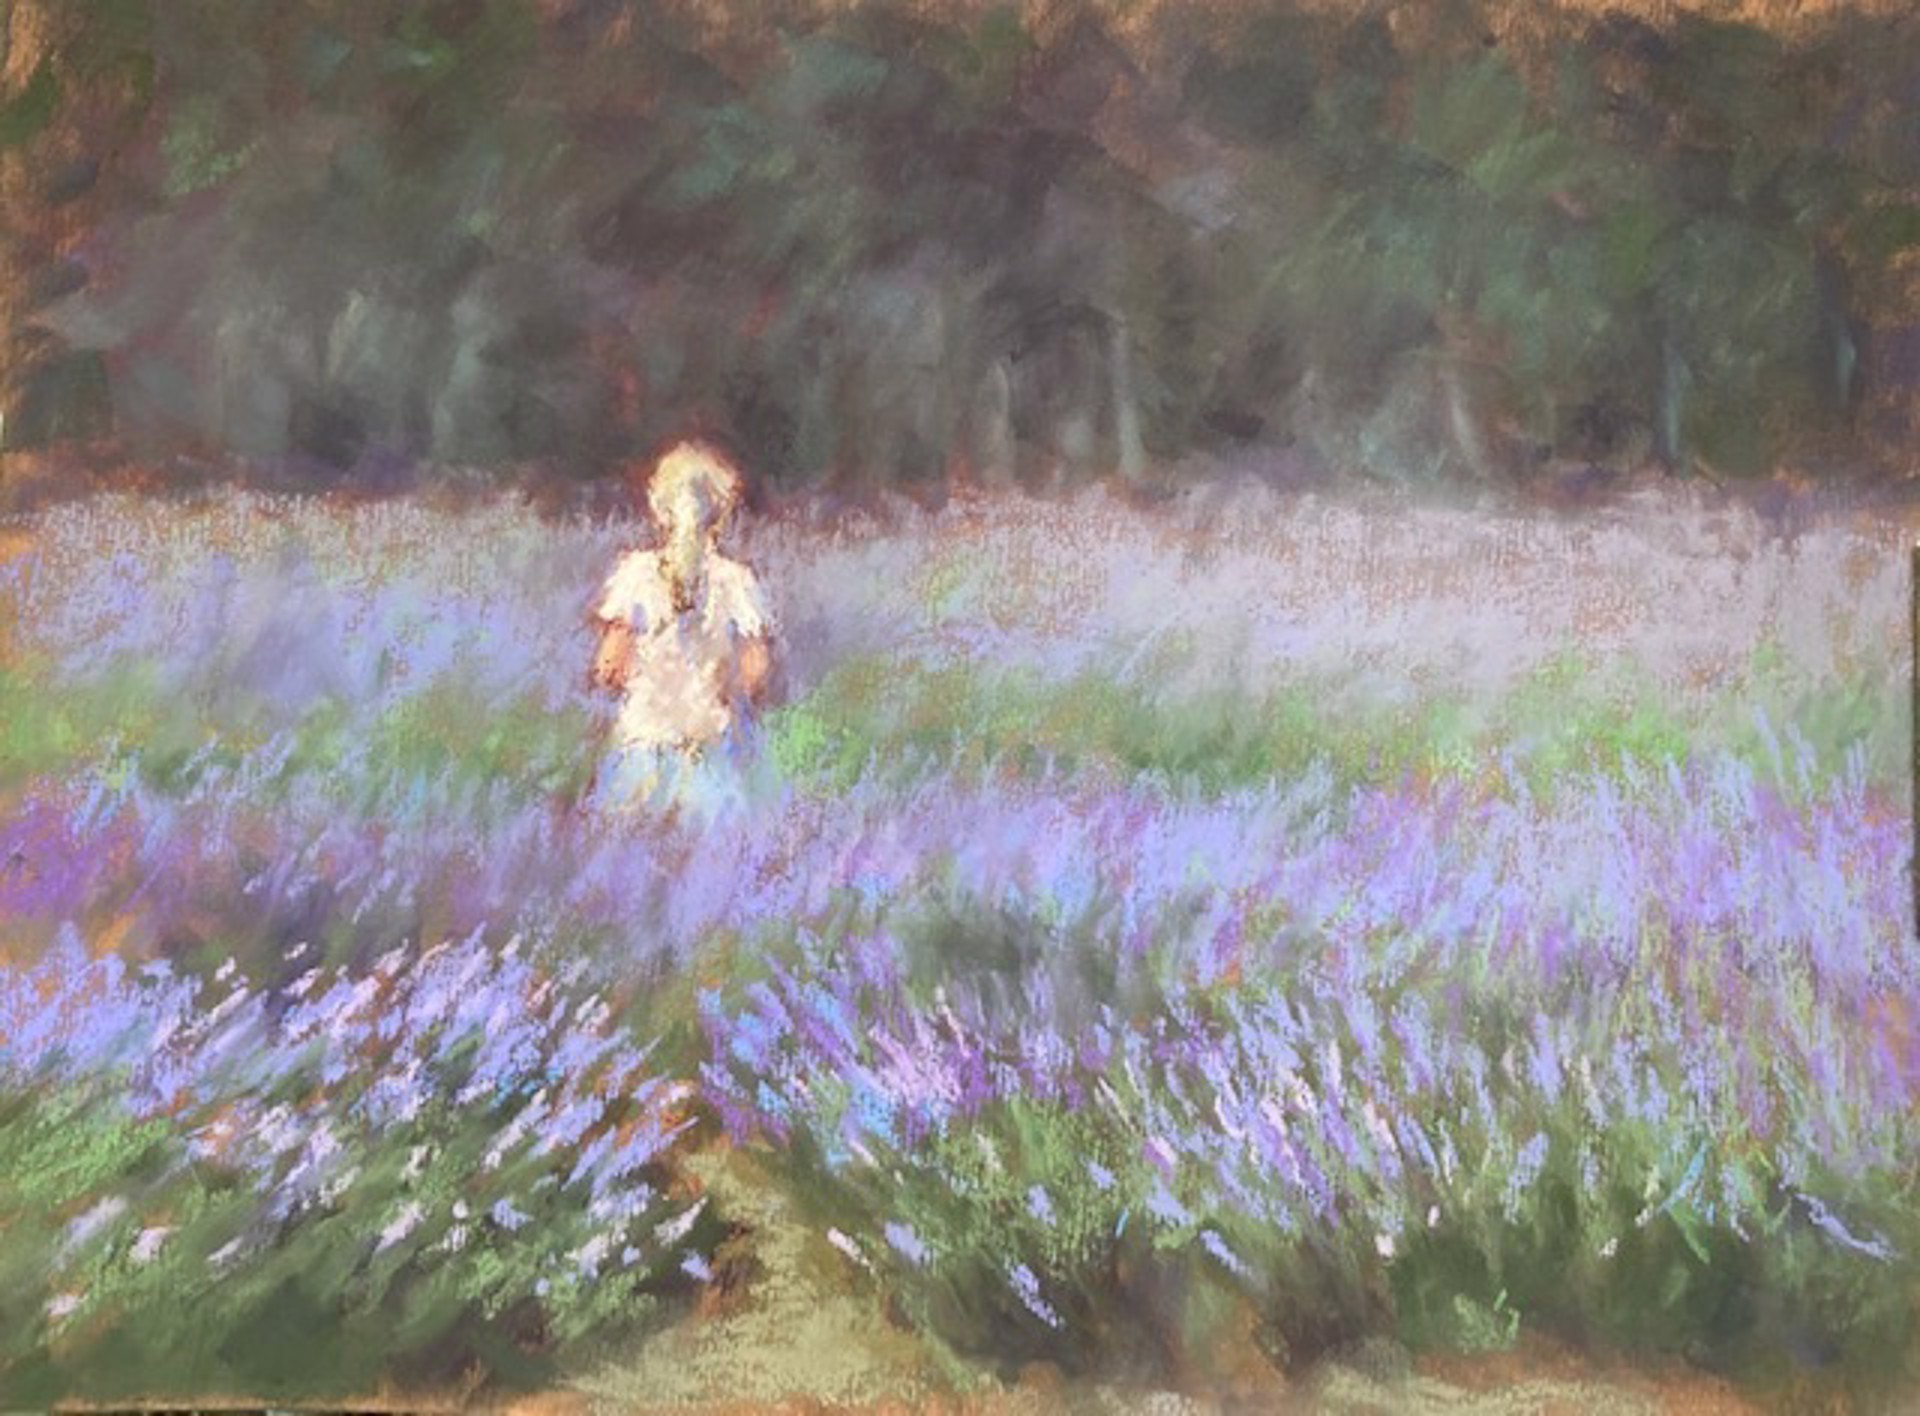 Under a Lavender Spell by JoAnn Ballinger